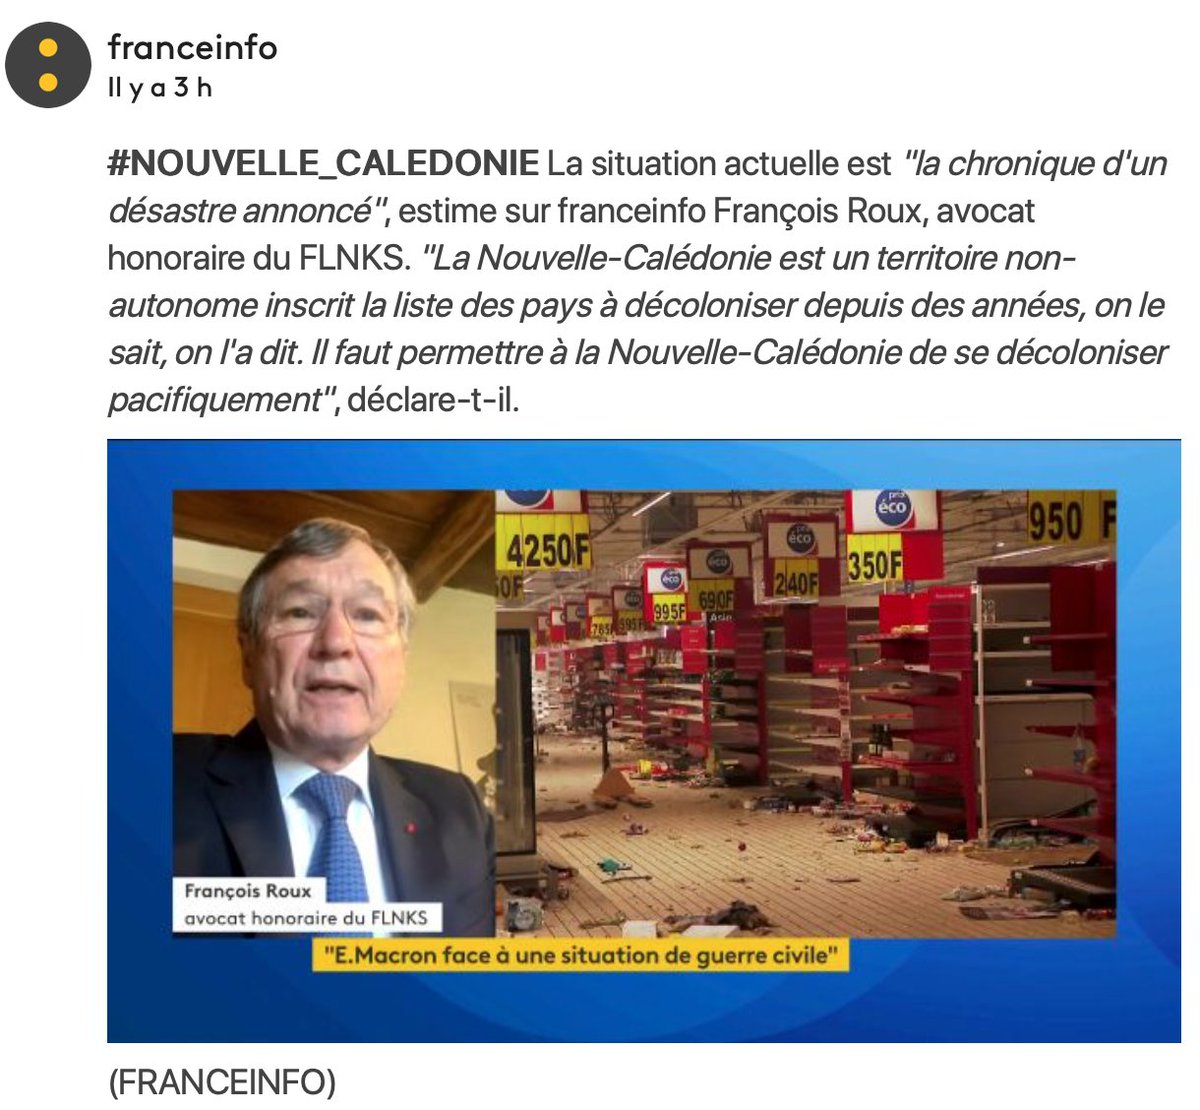 « On ne doit pas traiter cette affaire comme une affaire franco-française. La situation en #NouvelleCalédonie relève du droit international », estime François Roux, avocat honoraire du FLNKS, arguant qu’une médiation « ne peut venir que des Nations unies ». #Kanaky